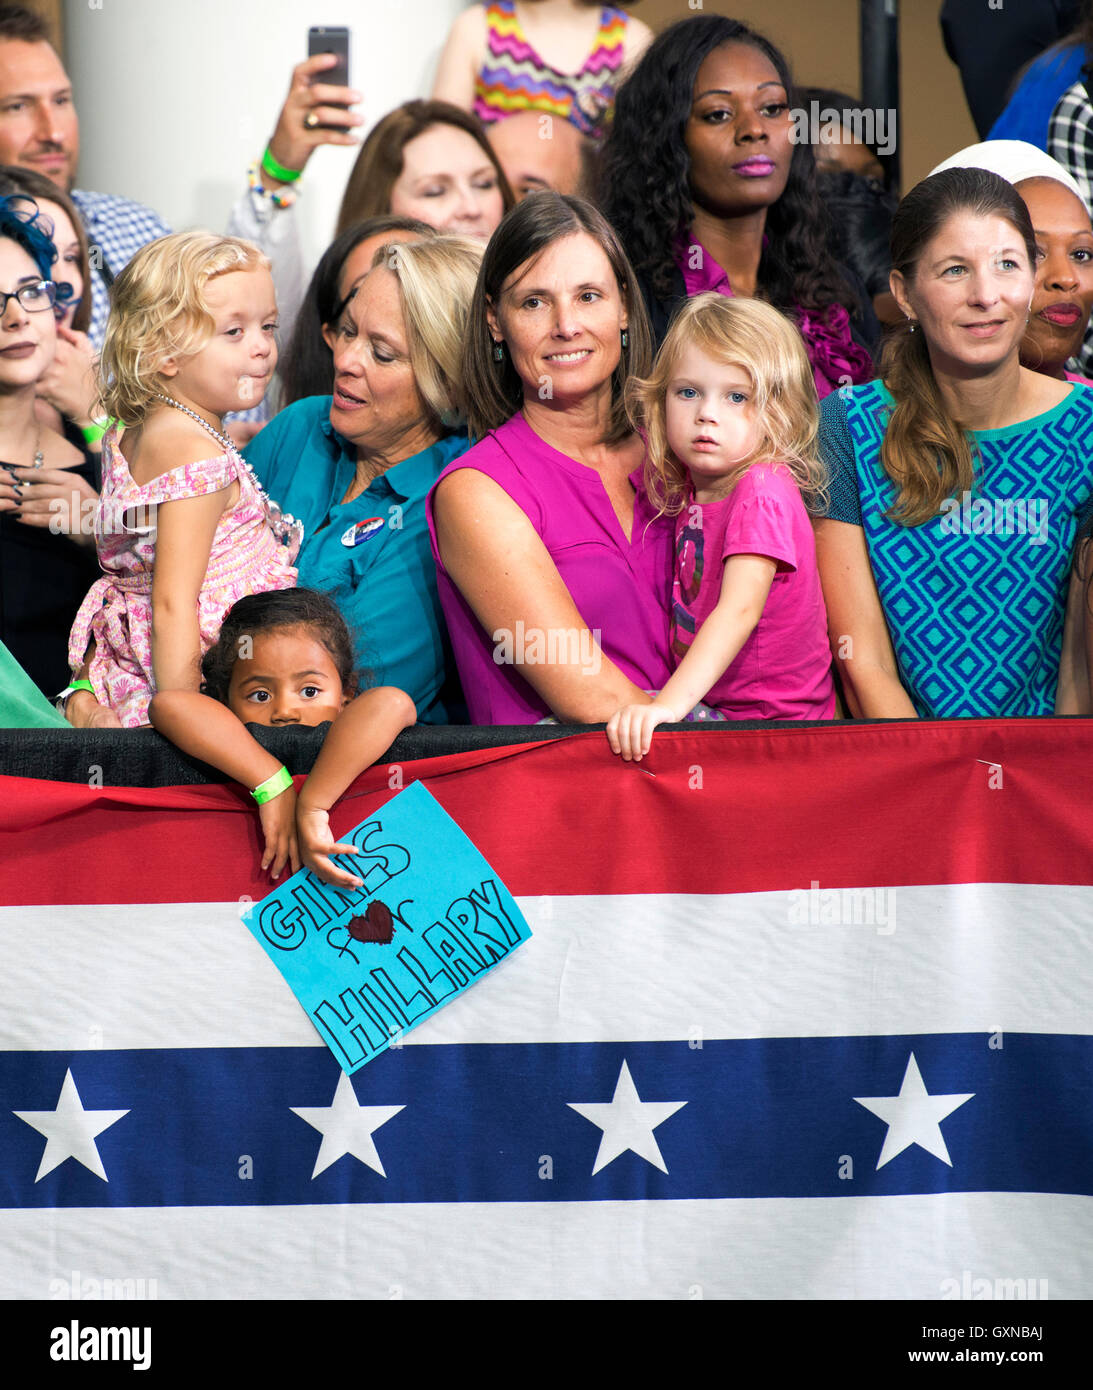 Fairfax, VA Sep 16, 2016, USA : un très jeune Clinton supporter jusqu'à signer la campagne rallye qui la Première Dame Michelle Obama apparaît sur le campus de l'Université George Mason à Fairfax, VA. Patsy Lynch/Alamy Live News Banque D'Images